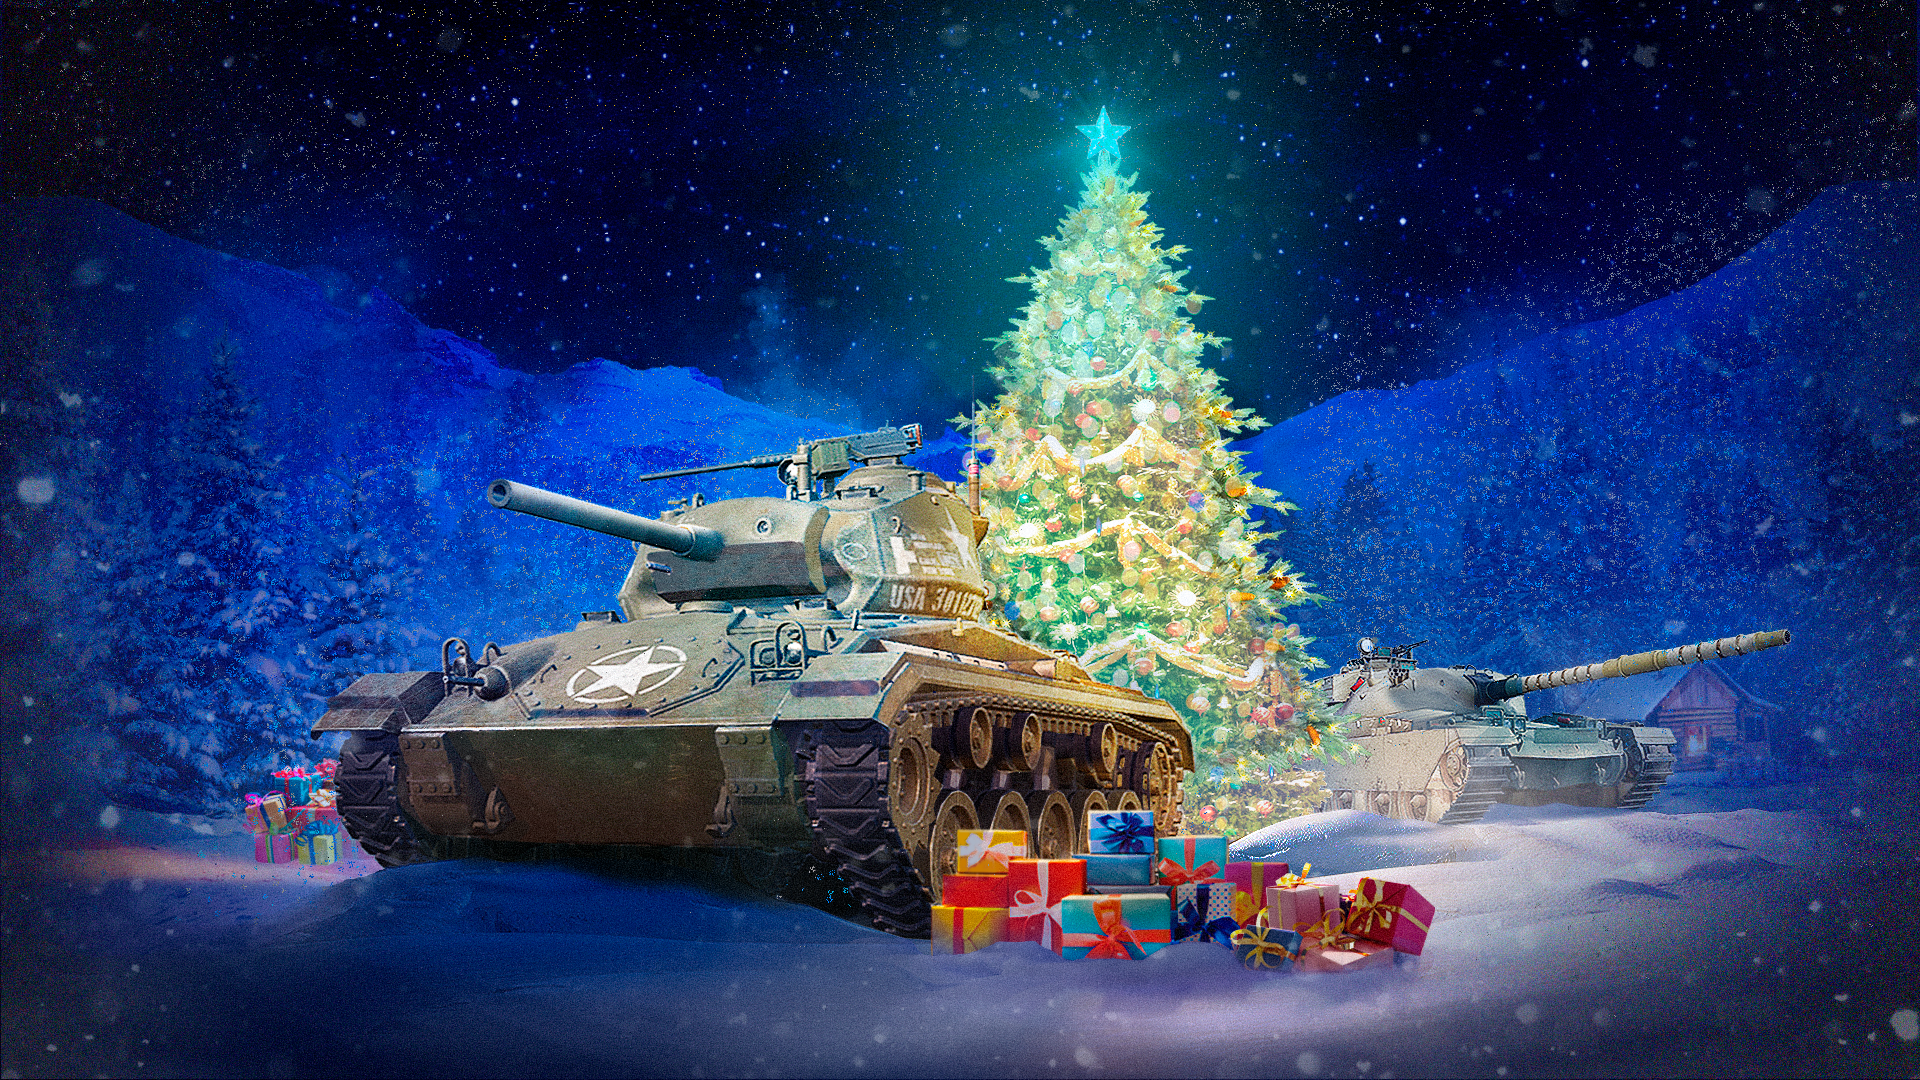 Ornamento de Natal para Jogos de Vídeo do Papai Noel Gamer Tree Buddees